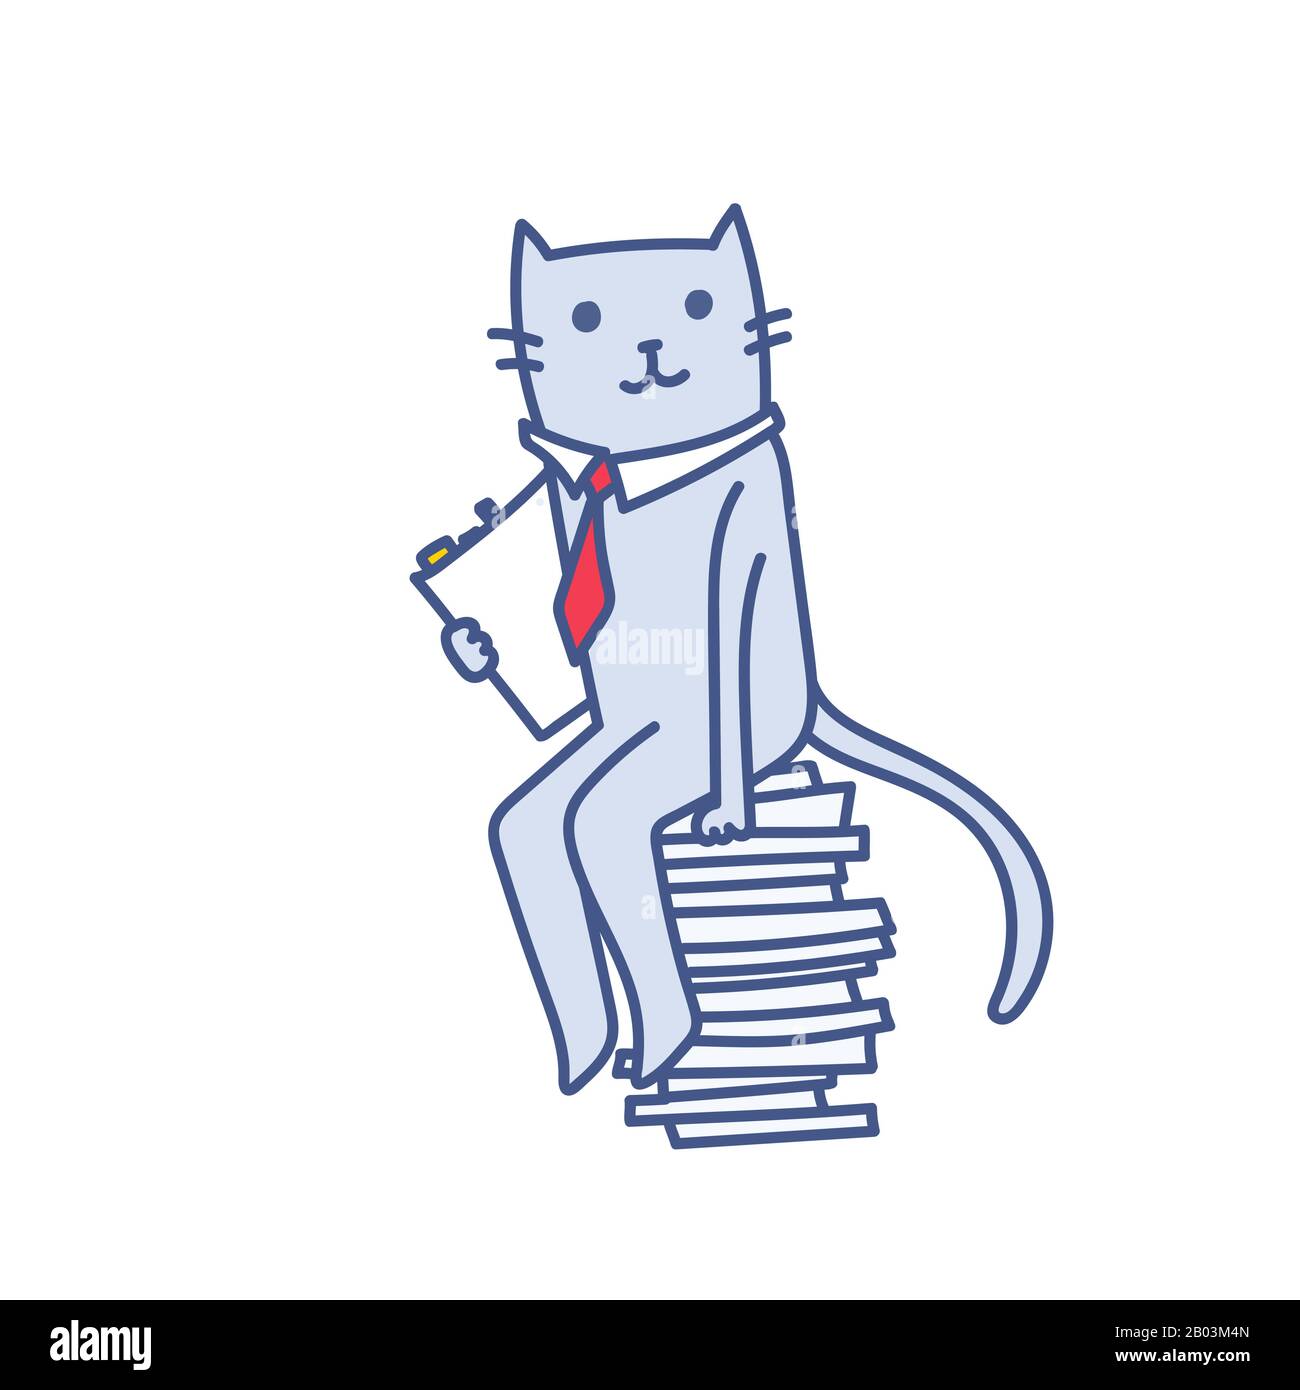 Cartoon Business CAT mit Dokumentenordner auf einem Stapel von Ordnern, erfolgreiche Buchhaltung, Vektorgrafiken isoliert auf weiß. Konz Stock Vektor